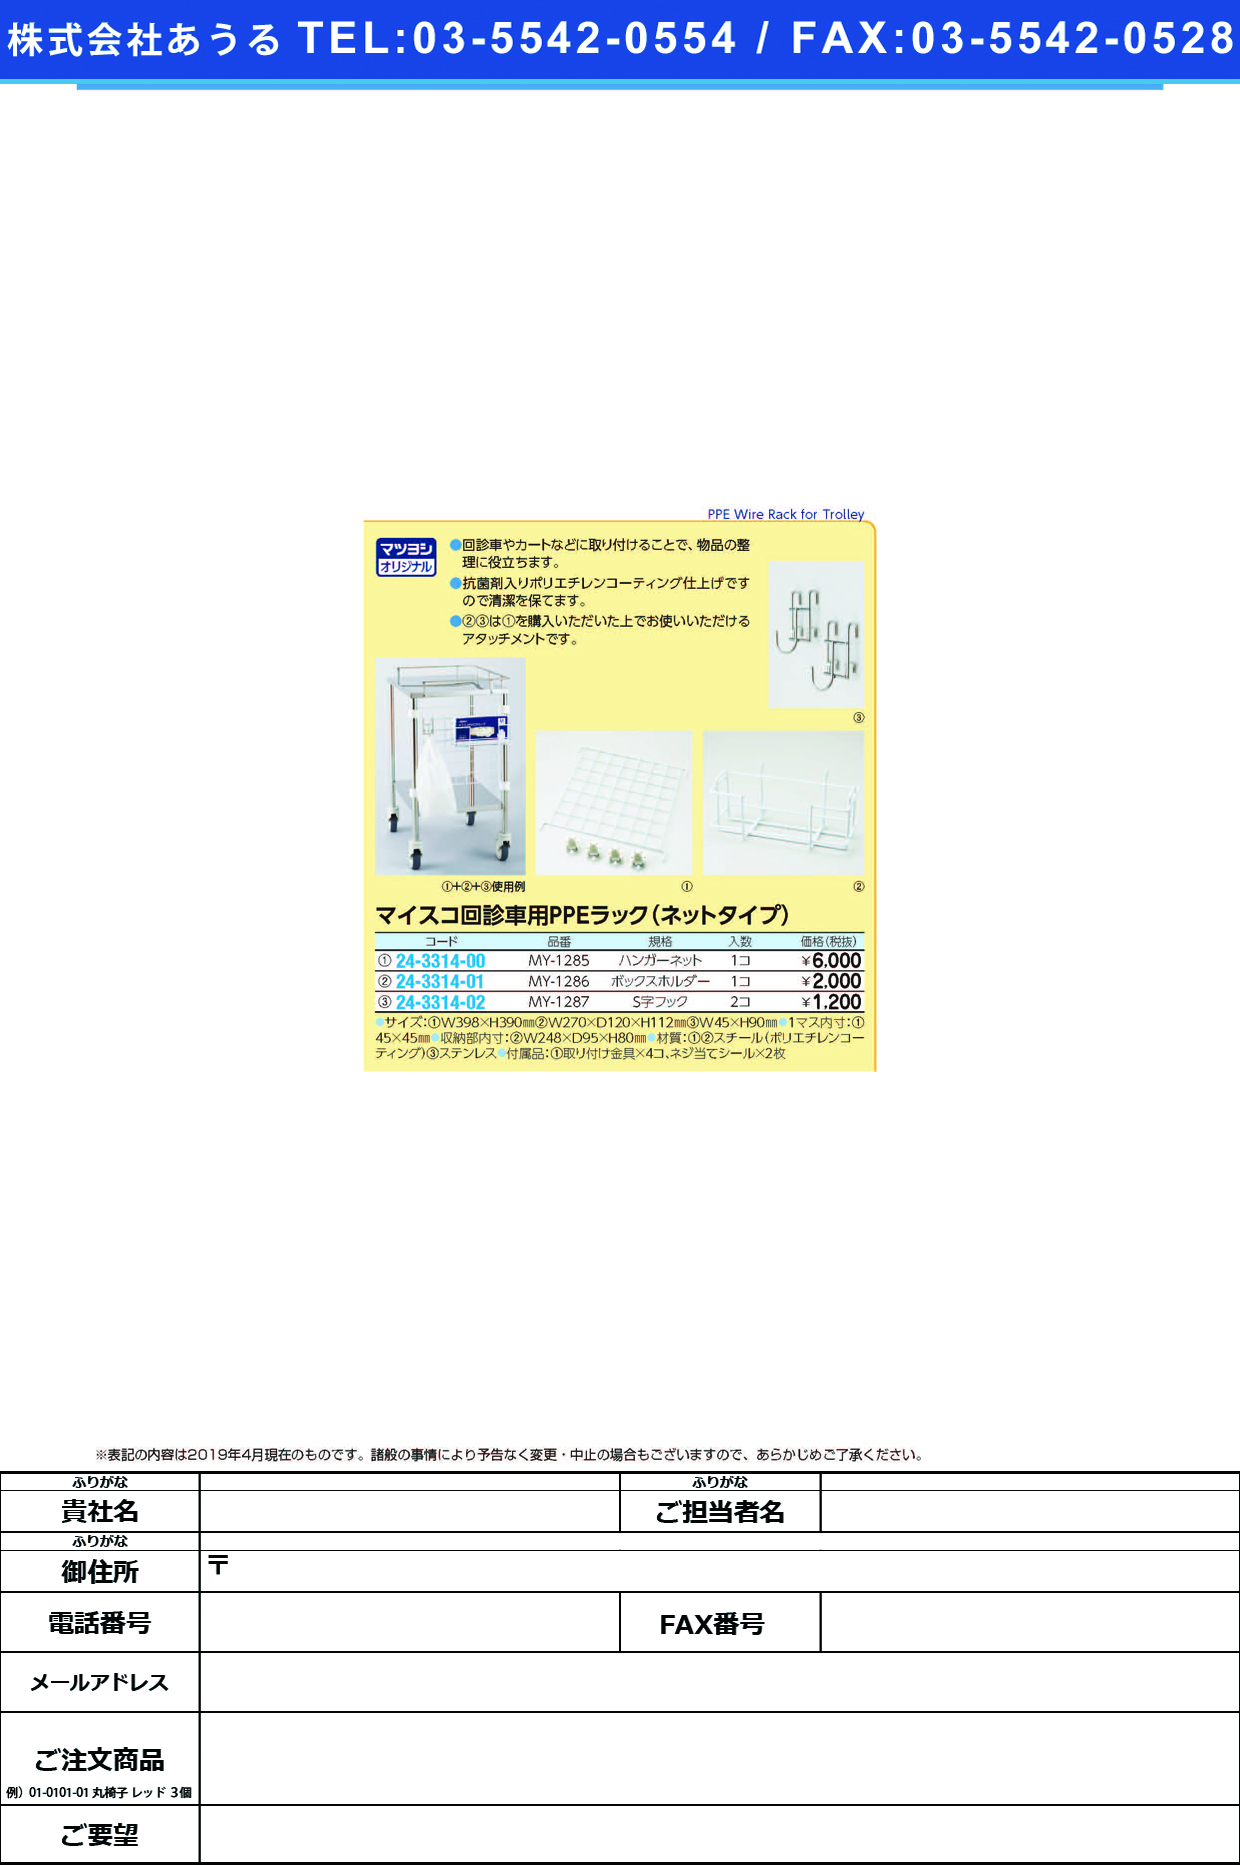 (24-3314-00)回診車用ＰＰＥラックハンガーネット MY-1285 PPEﾗｯｸﾊﾝｶﾞｰﾈｯﾄ【1個単位】【2019年カタログ商品】